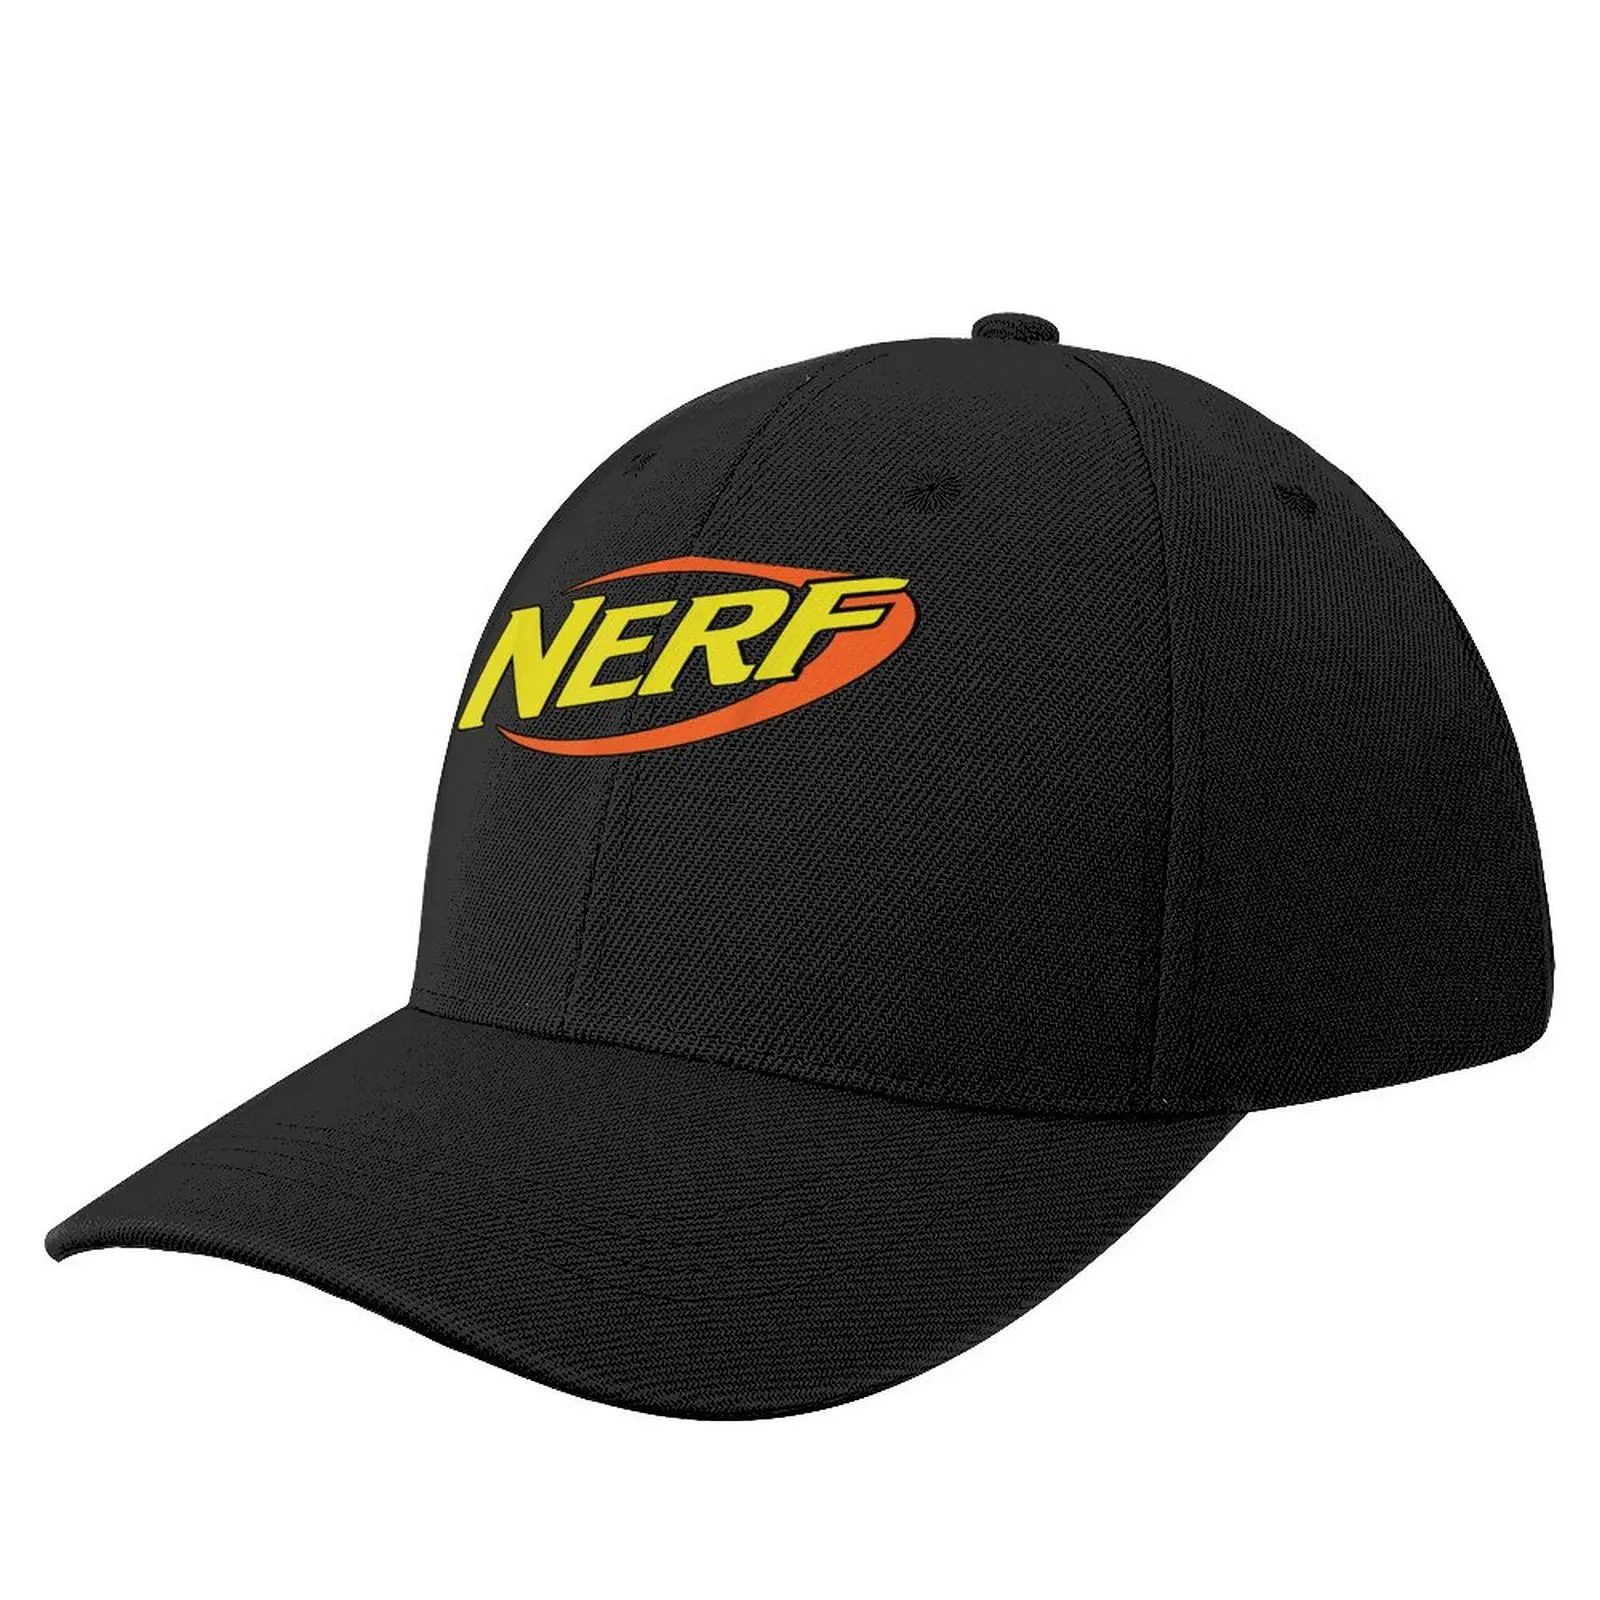 

Классическая бейсболка Nerf с логотипом, Прямая поставка, роскошная фирменная забавная шляпа